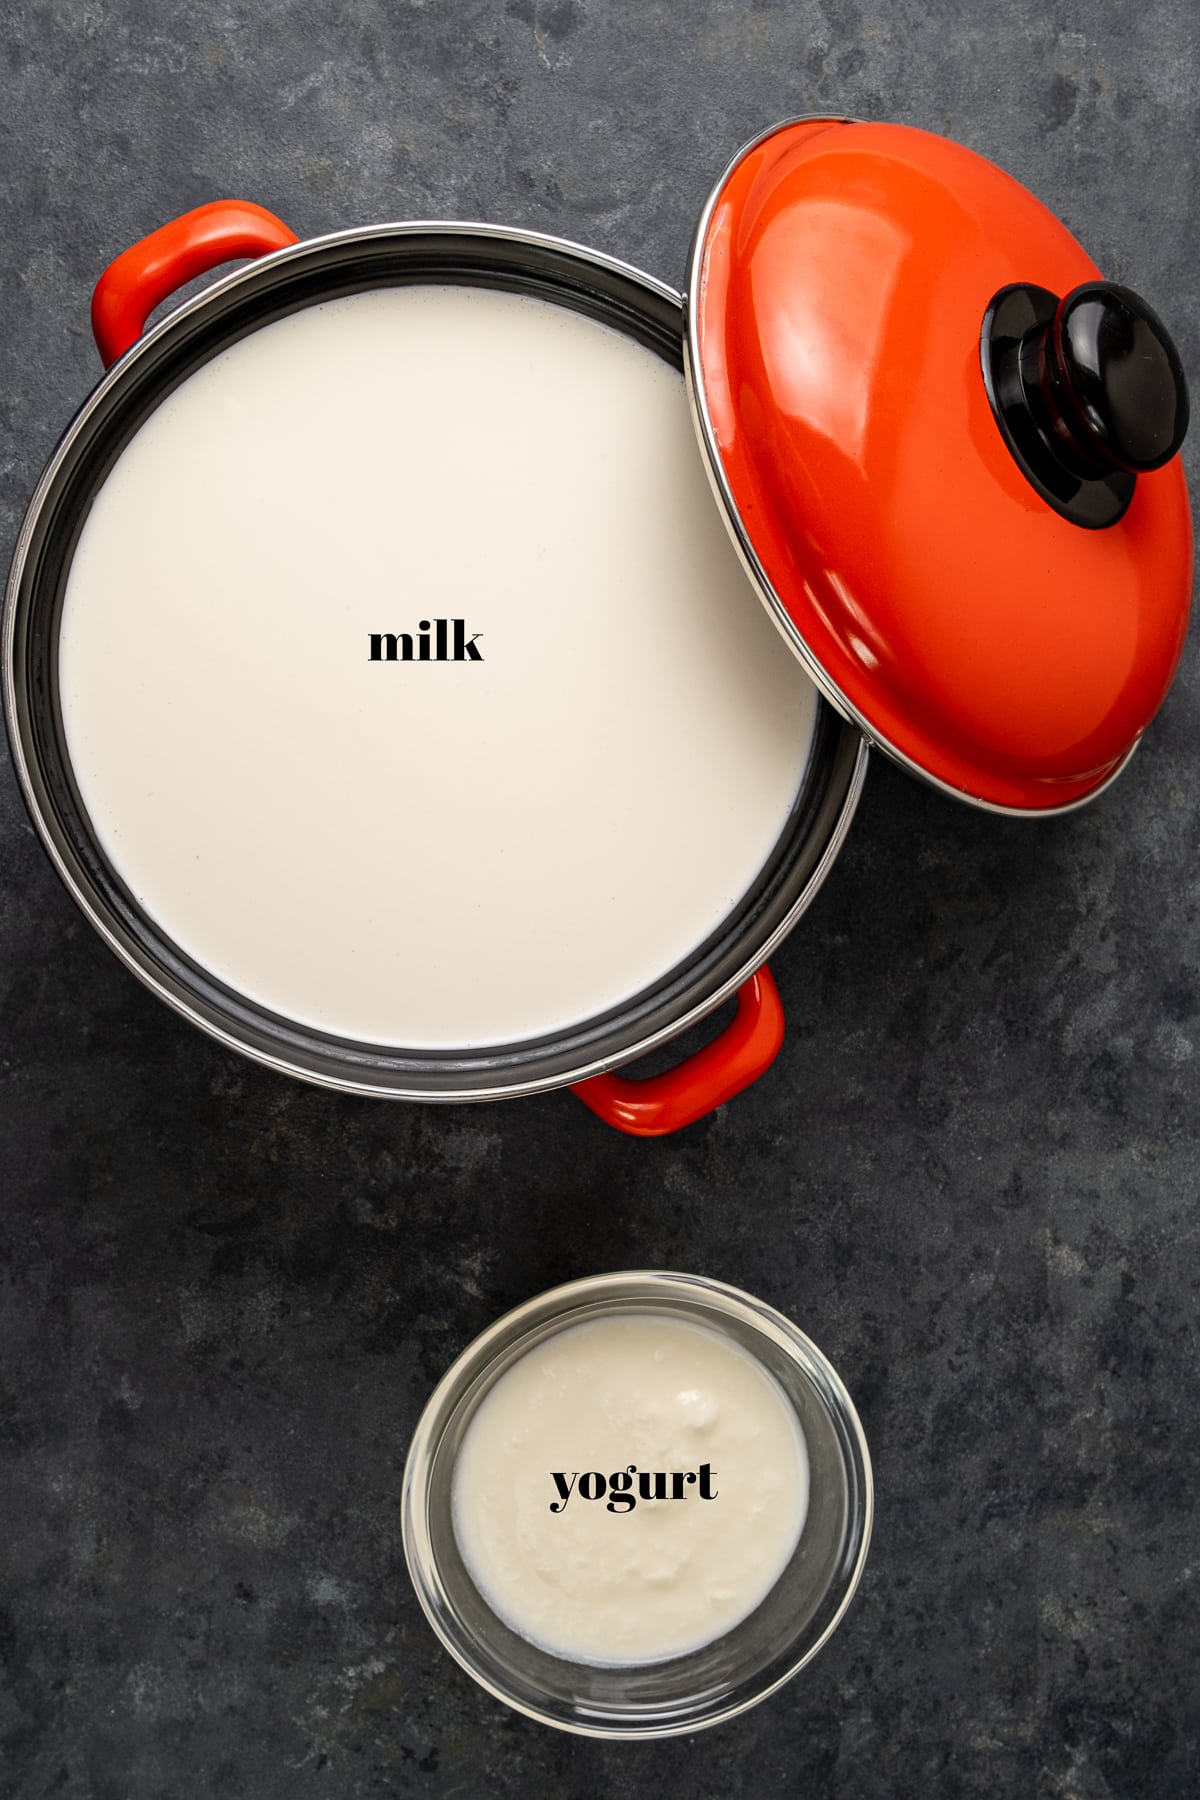 牛奶装在搪瓷锅里，旁边有一个红色的盖子，酸奶装在一个小碗里，背景是黑色的。